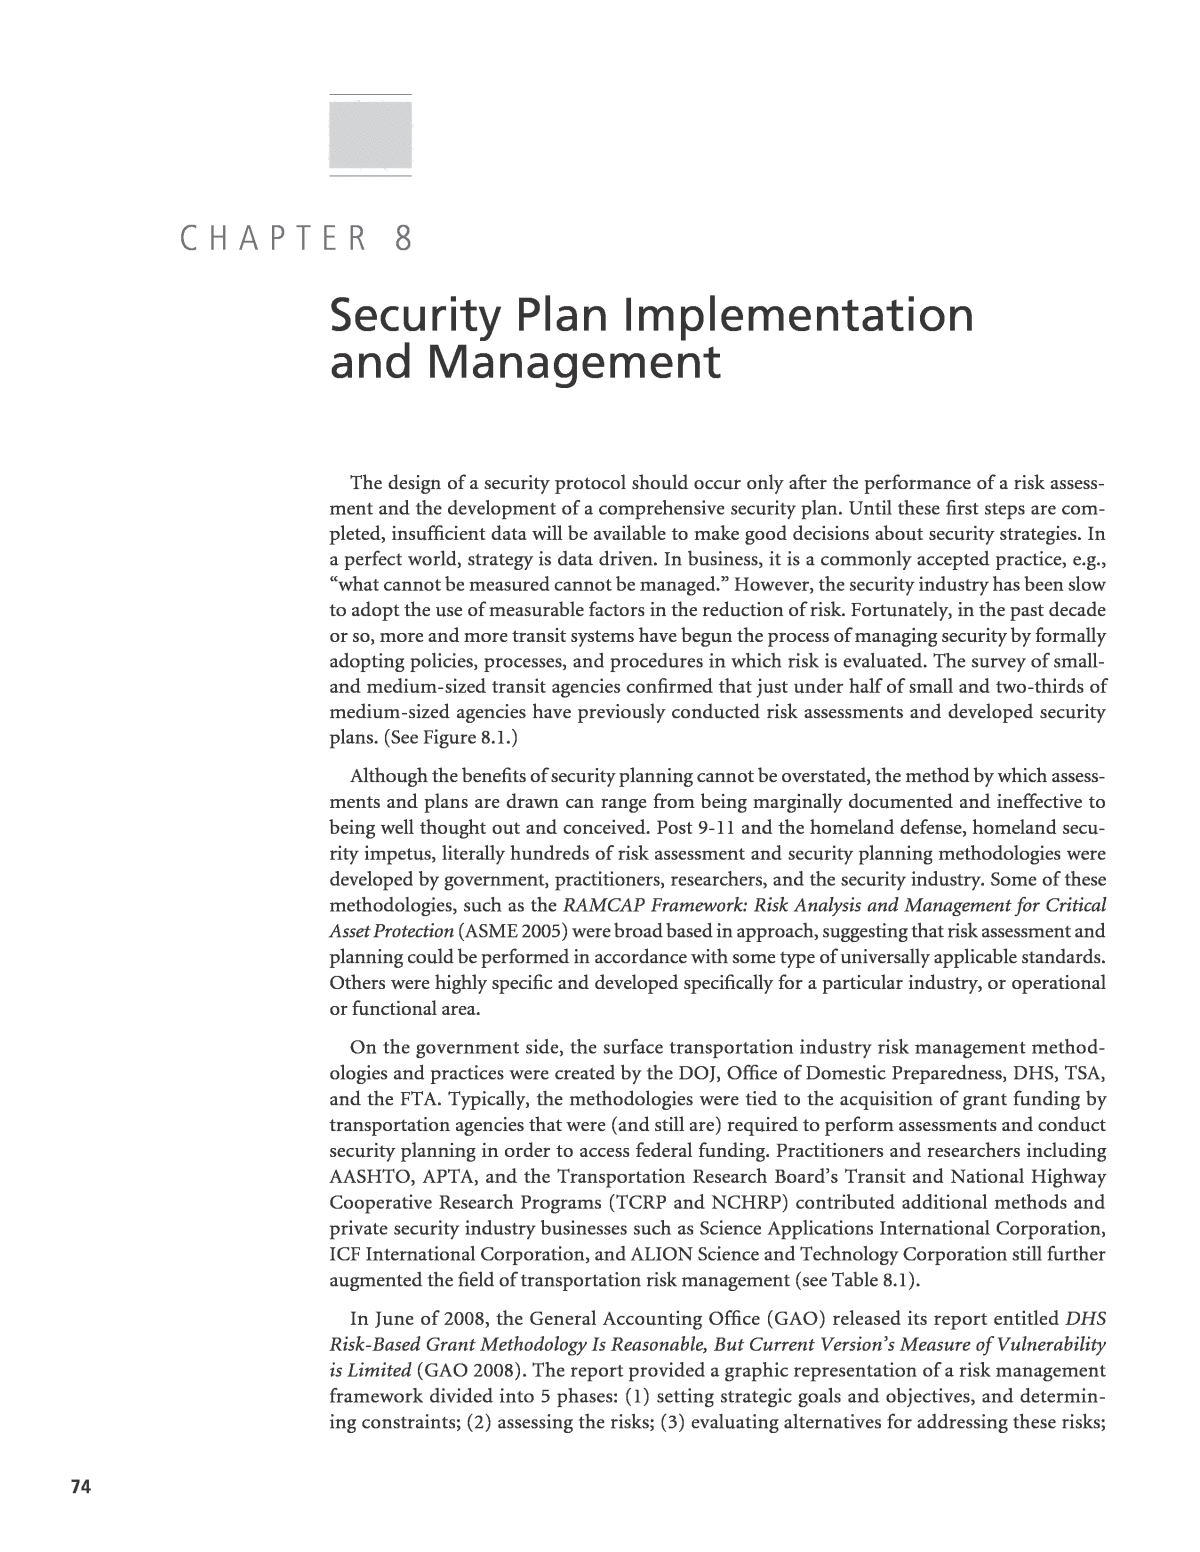 Security plan